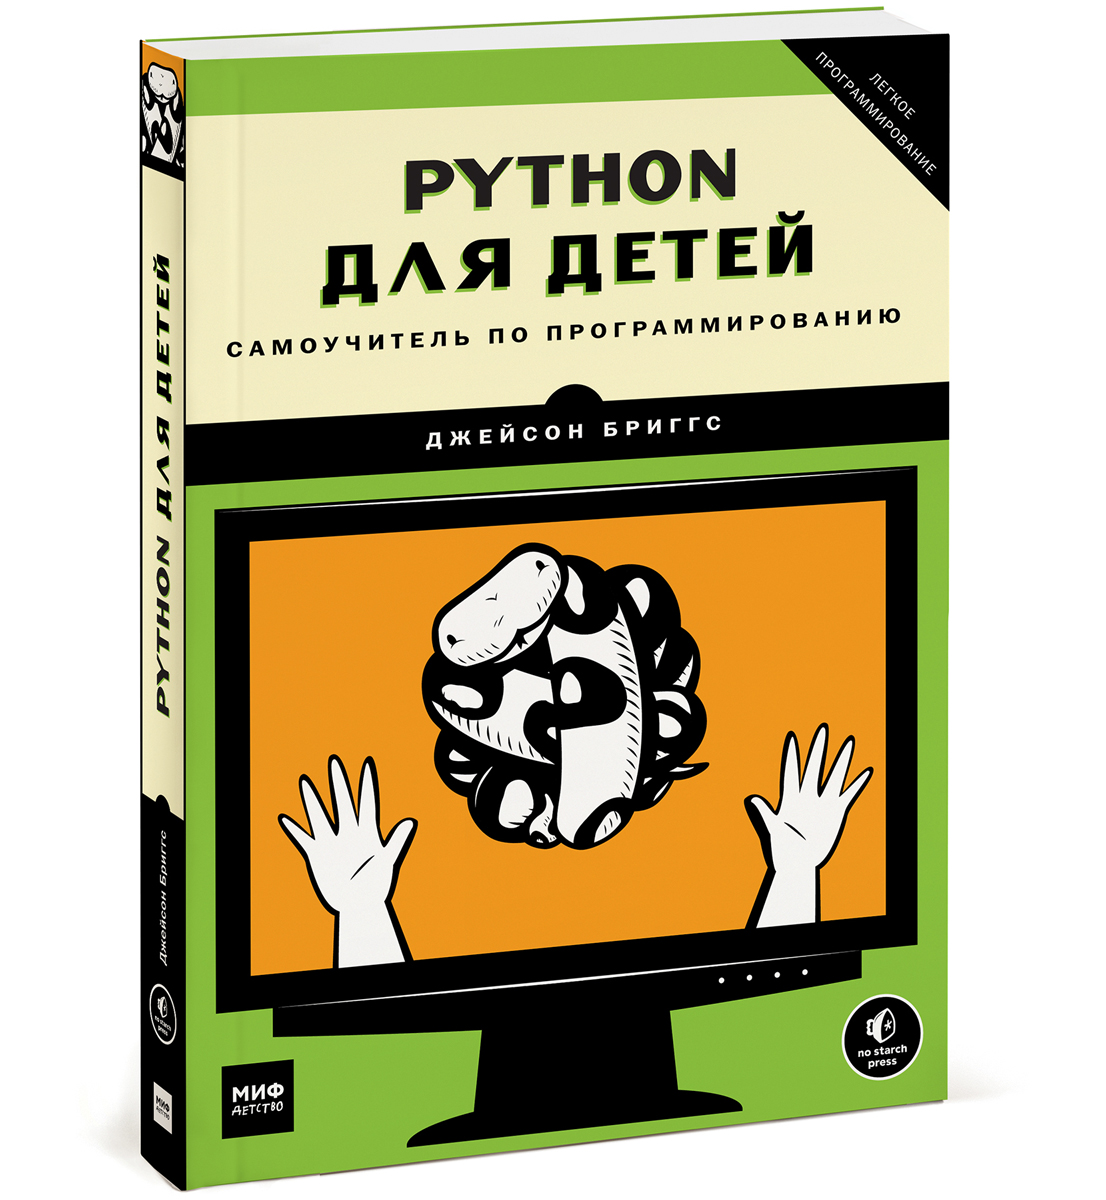 Python для детей. Самоучитель по программированию. Джейсон Бриггс